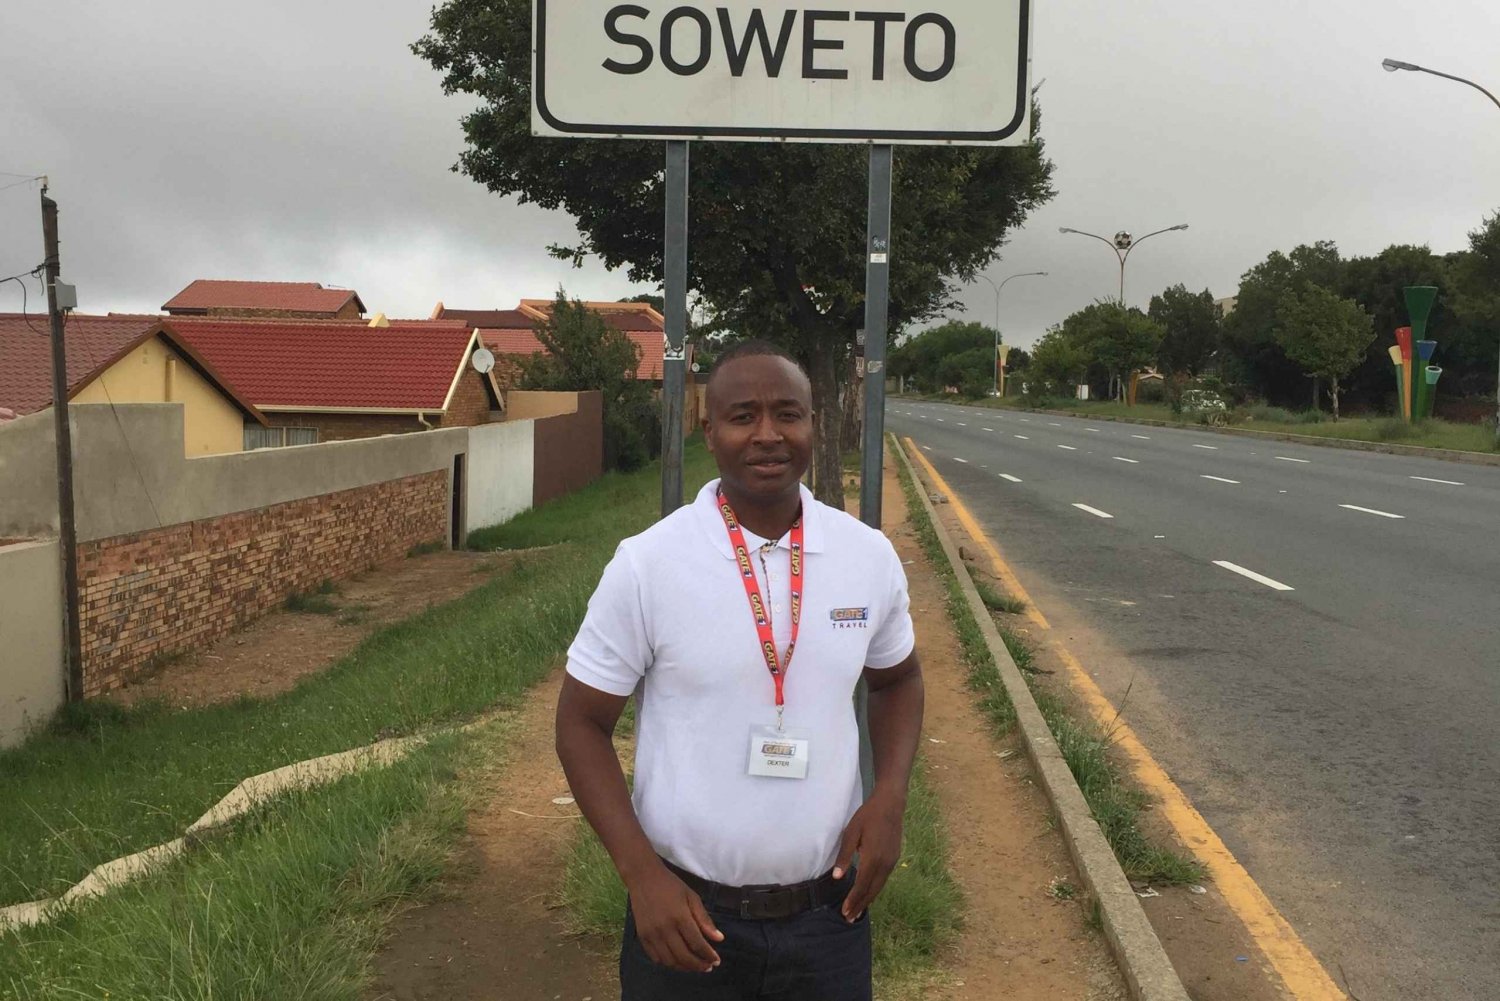 Soweto Tour privado Tour de día completo inmersivo